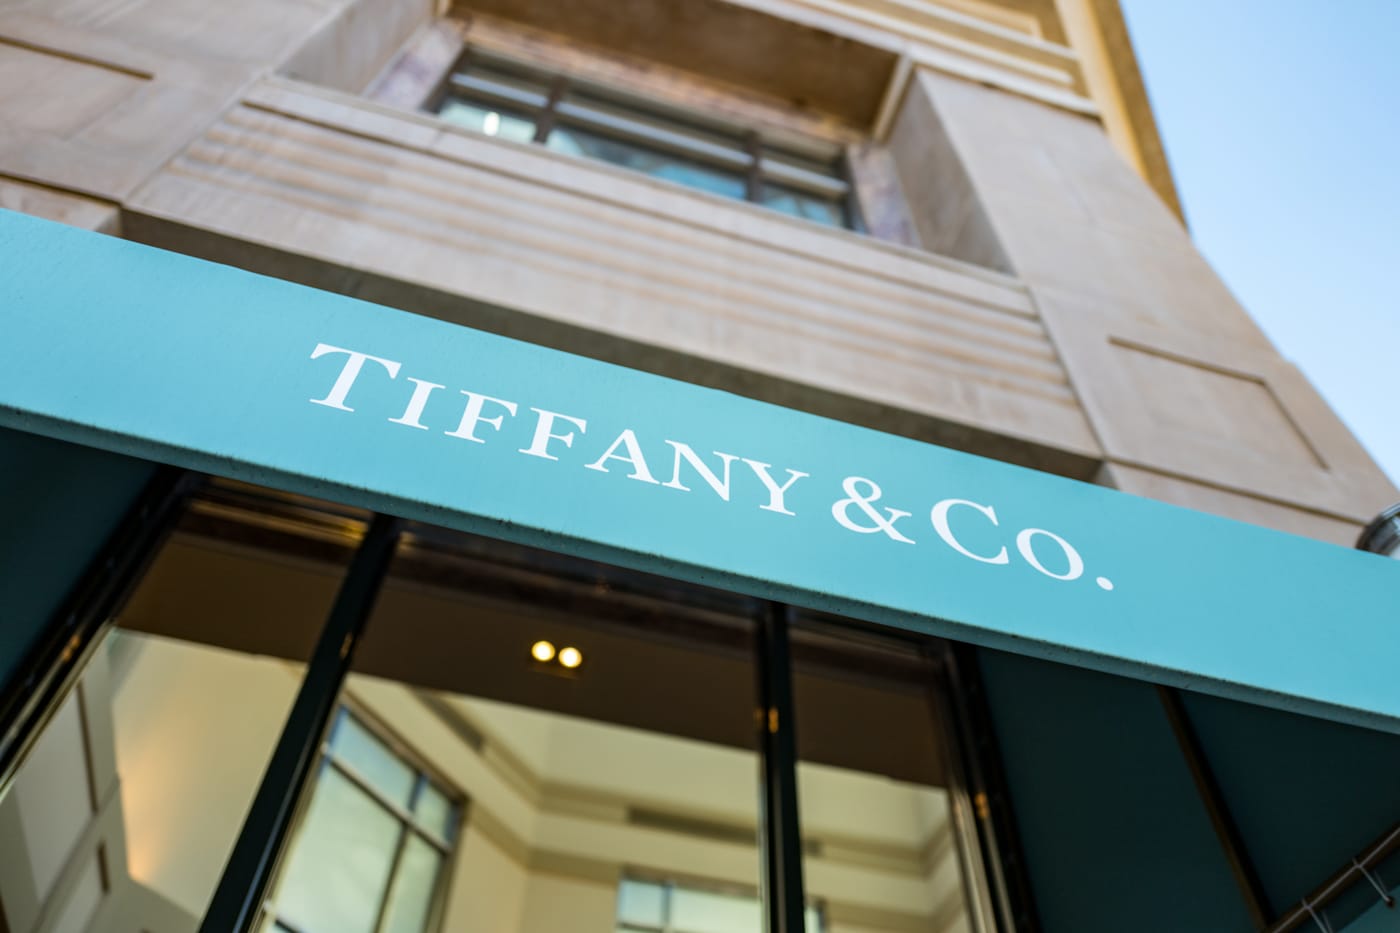 tiffany & co headquarters